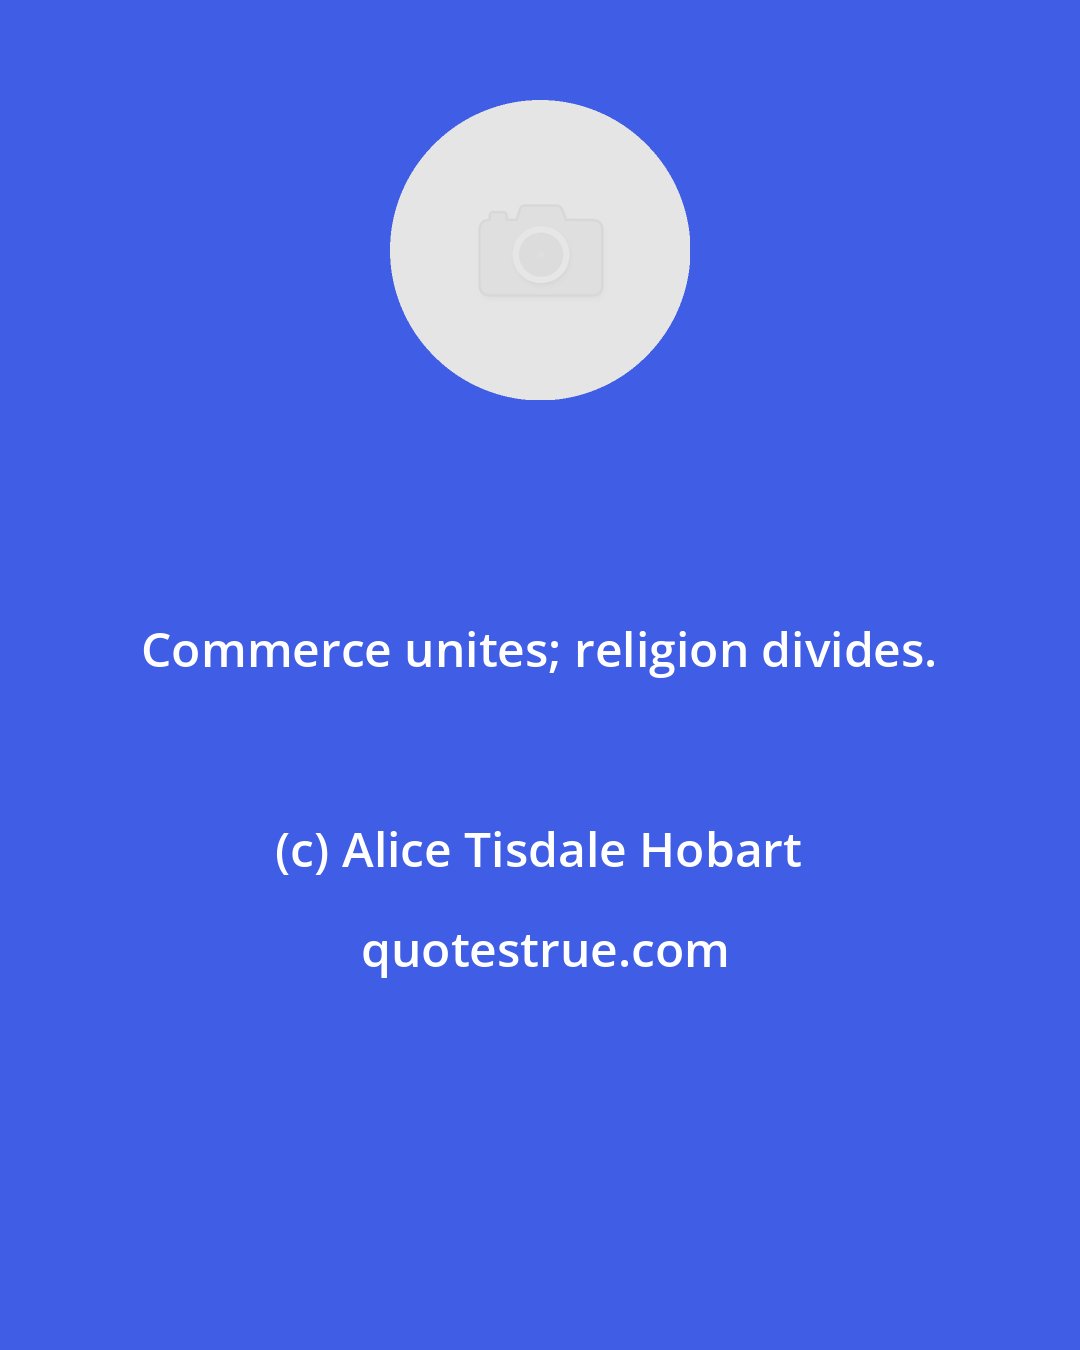 Alice Tisdale Hobart: Commerce unites; religion divides.